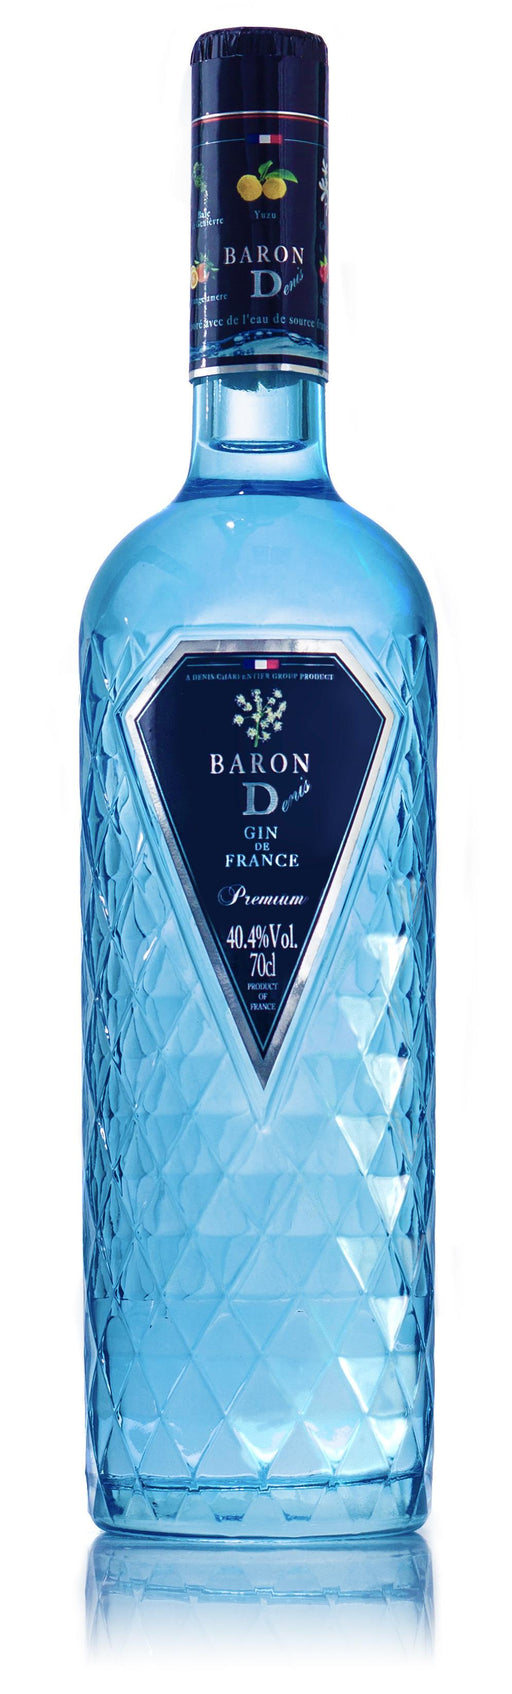 Baron D Gin 40,4%